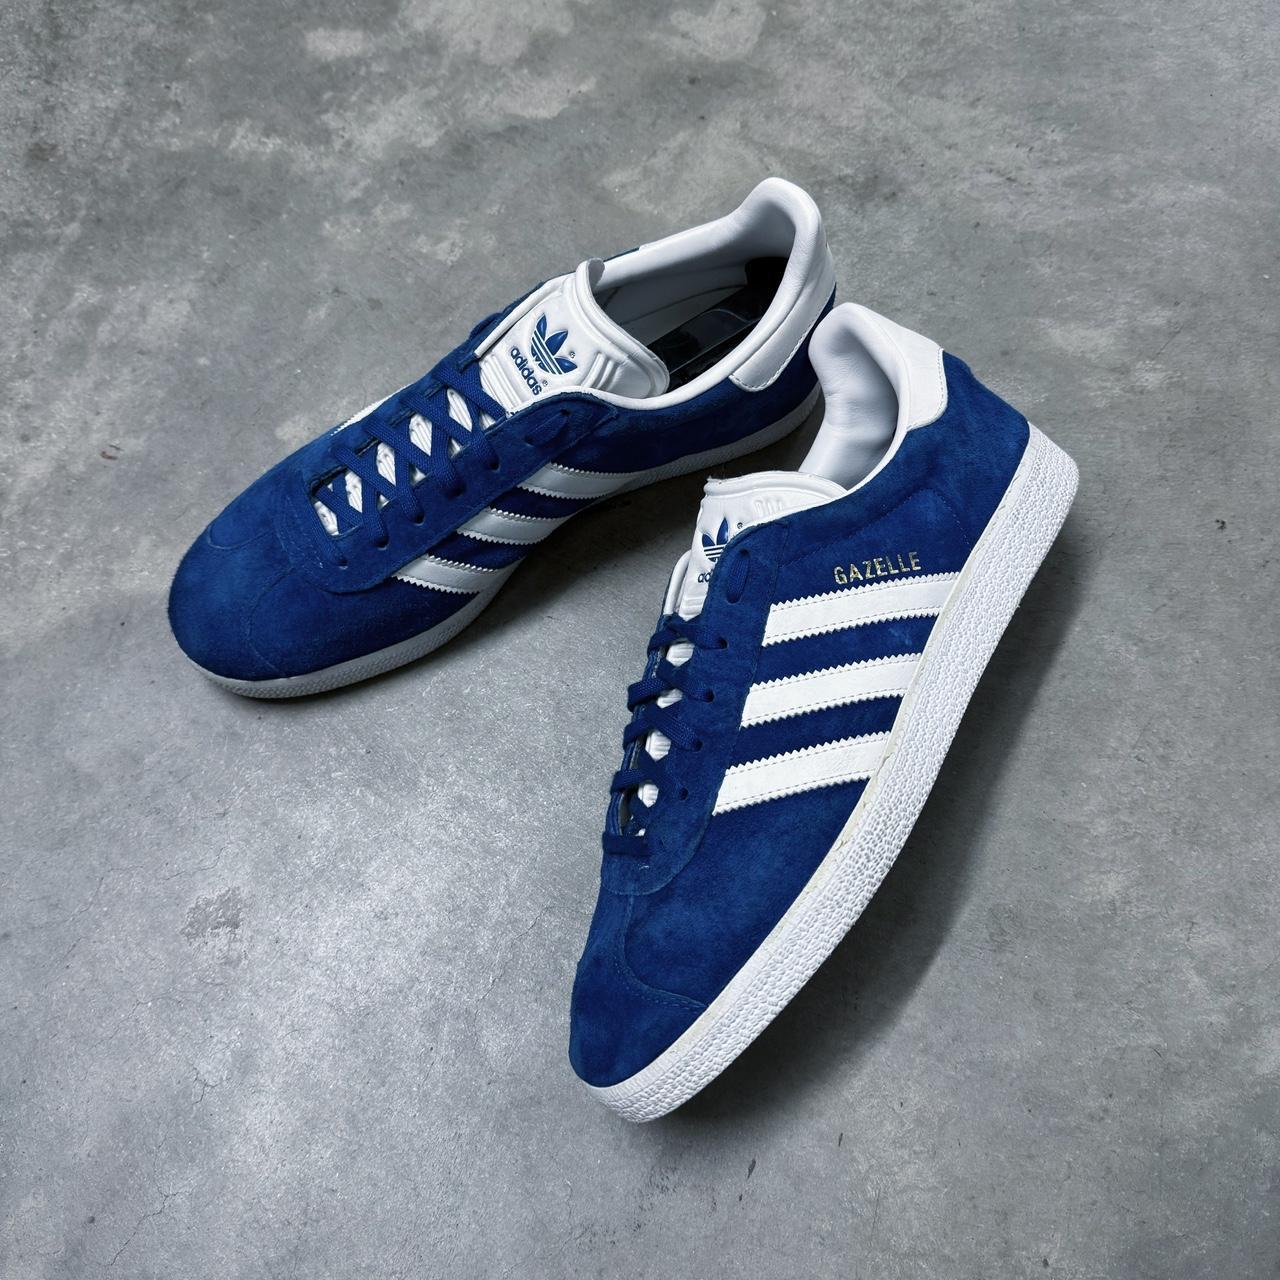 2016 Adidas Gazelle 85 Blue/White Suede Shoes Men’s... - Depop